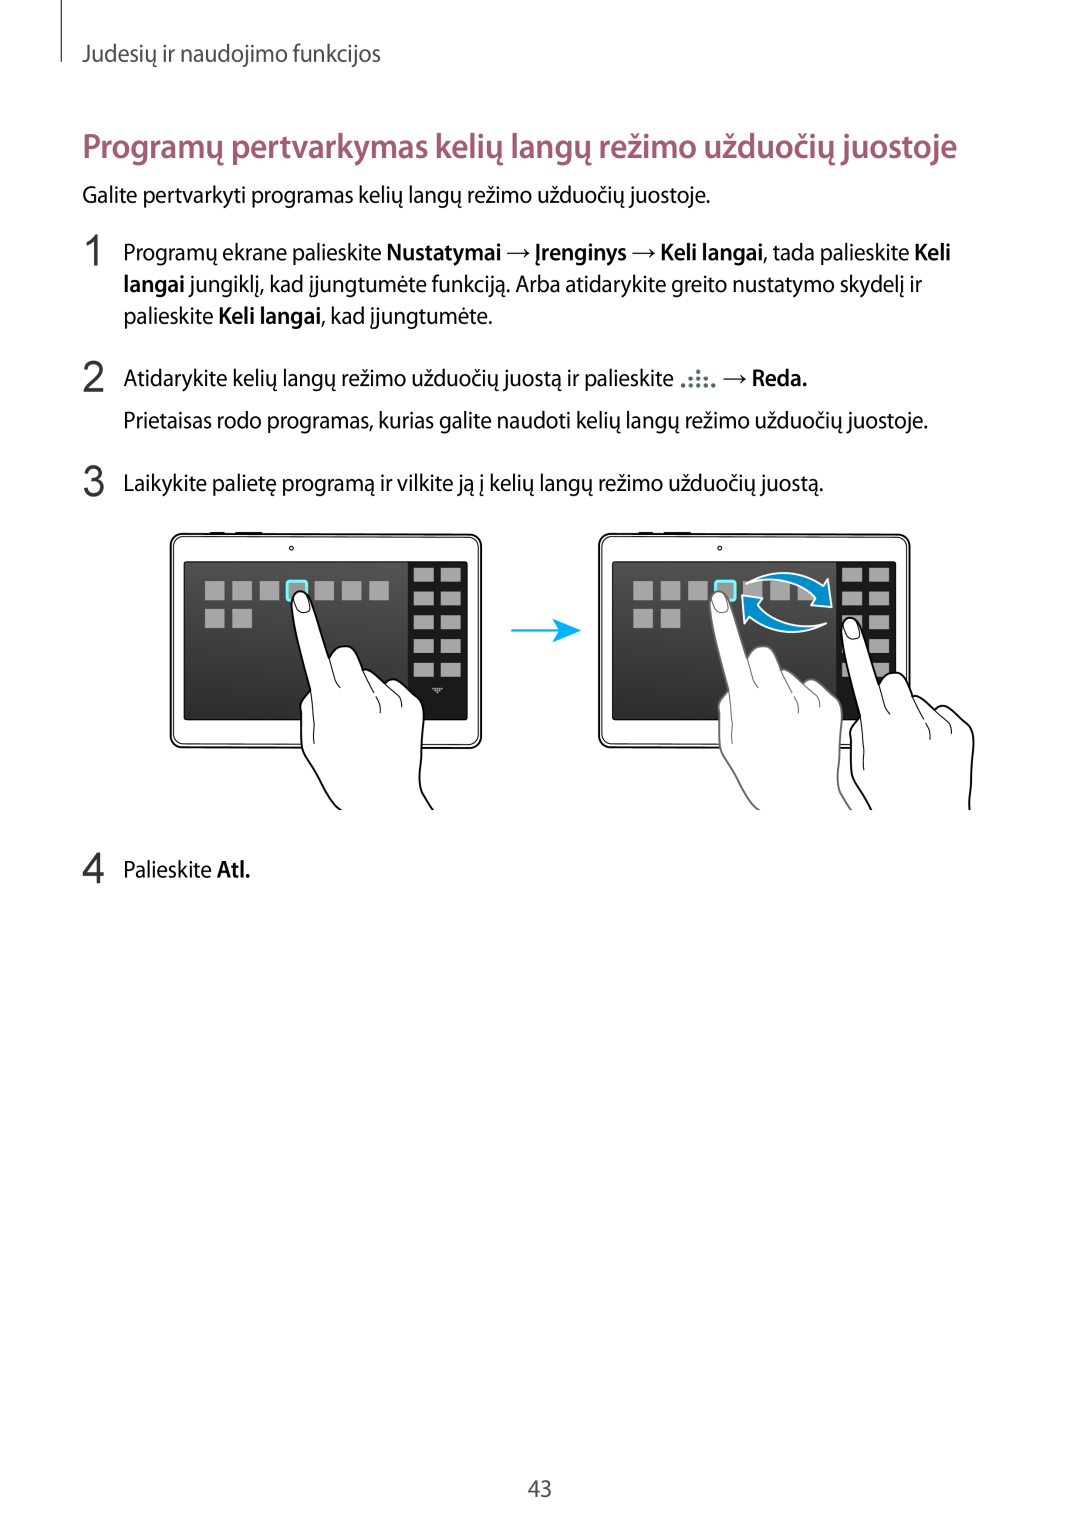 Samsung SM-T800NZWASEB manual Programų pertvarkymas kelių langų režimo užduočių juostoje, Judesių ir naudojimo funkcijos 